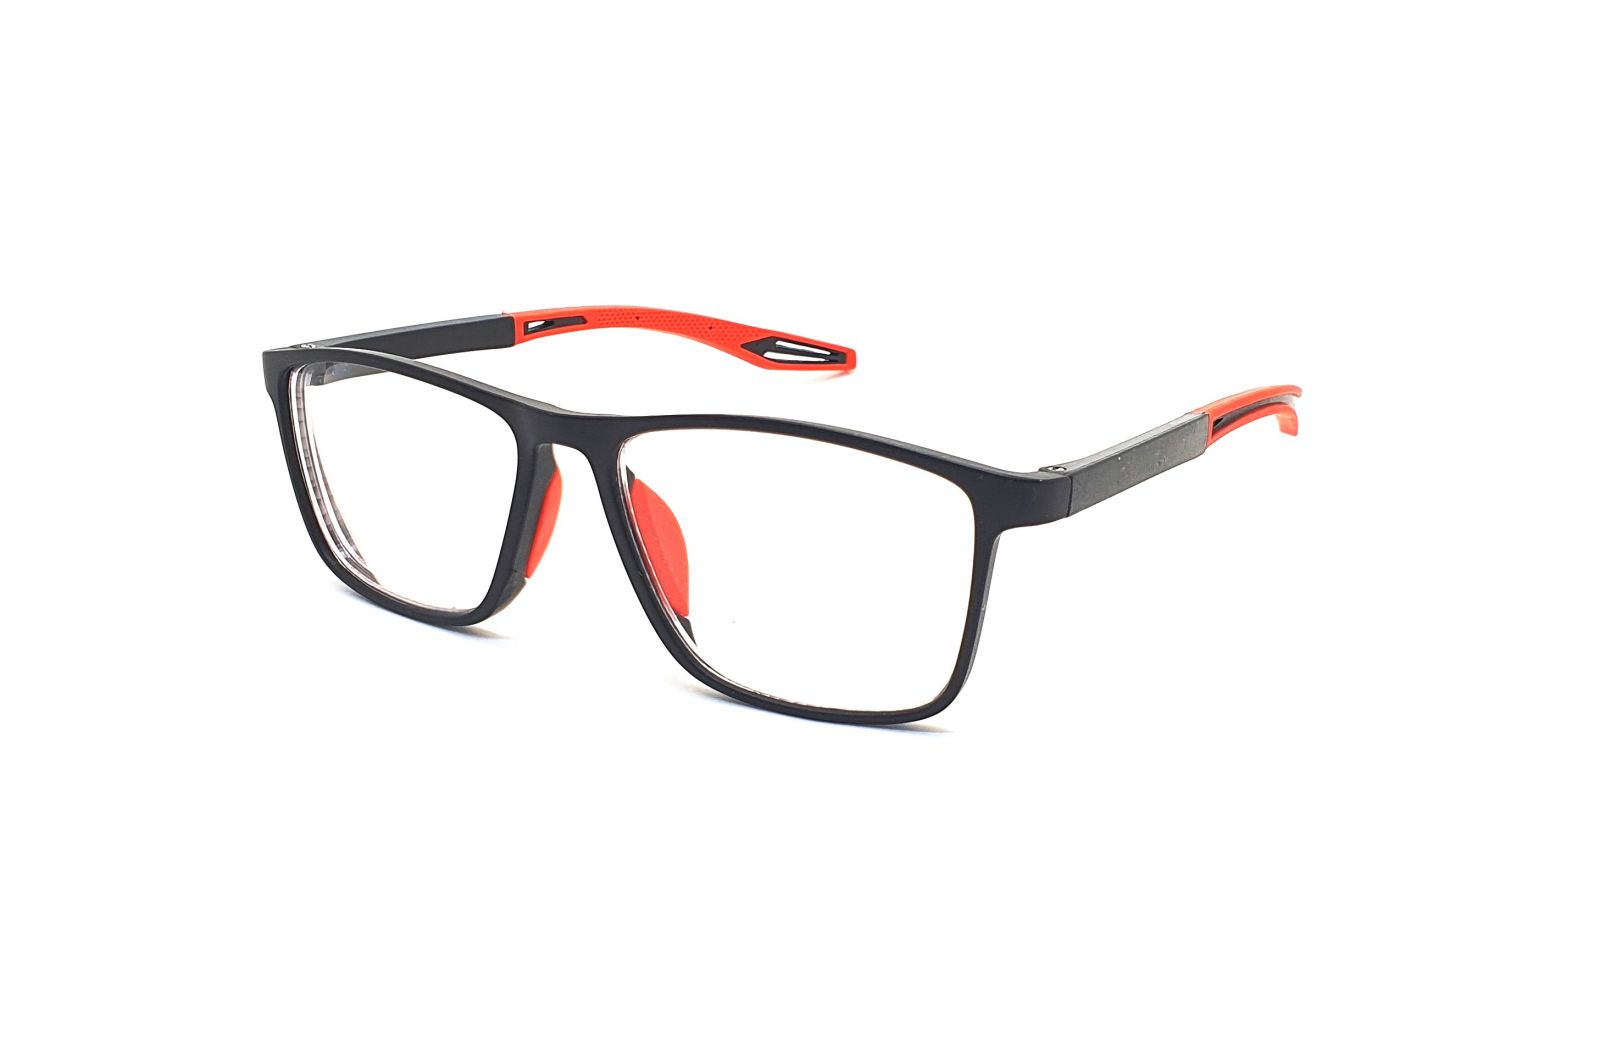 Samozabarvovací dioptrické brýle F04 / -5,00 black/red